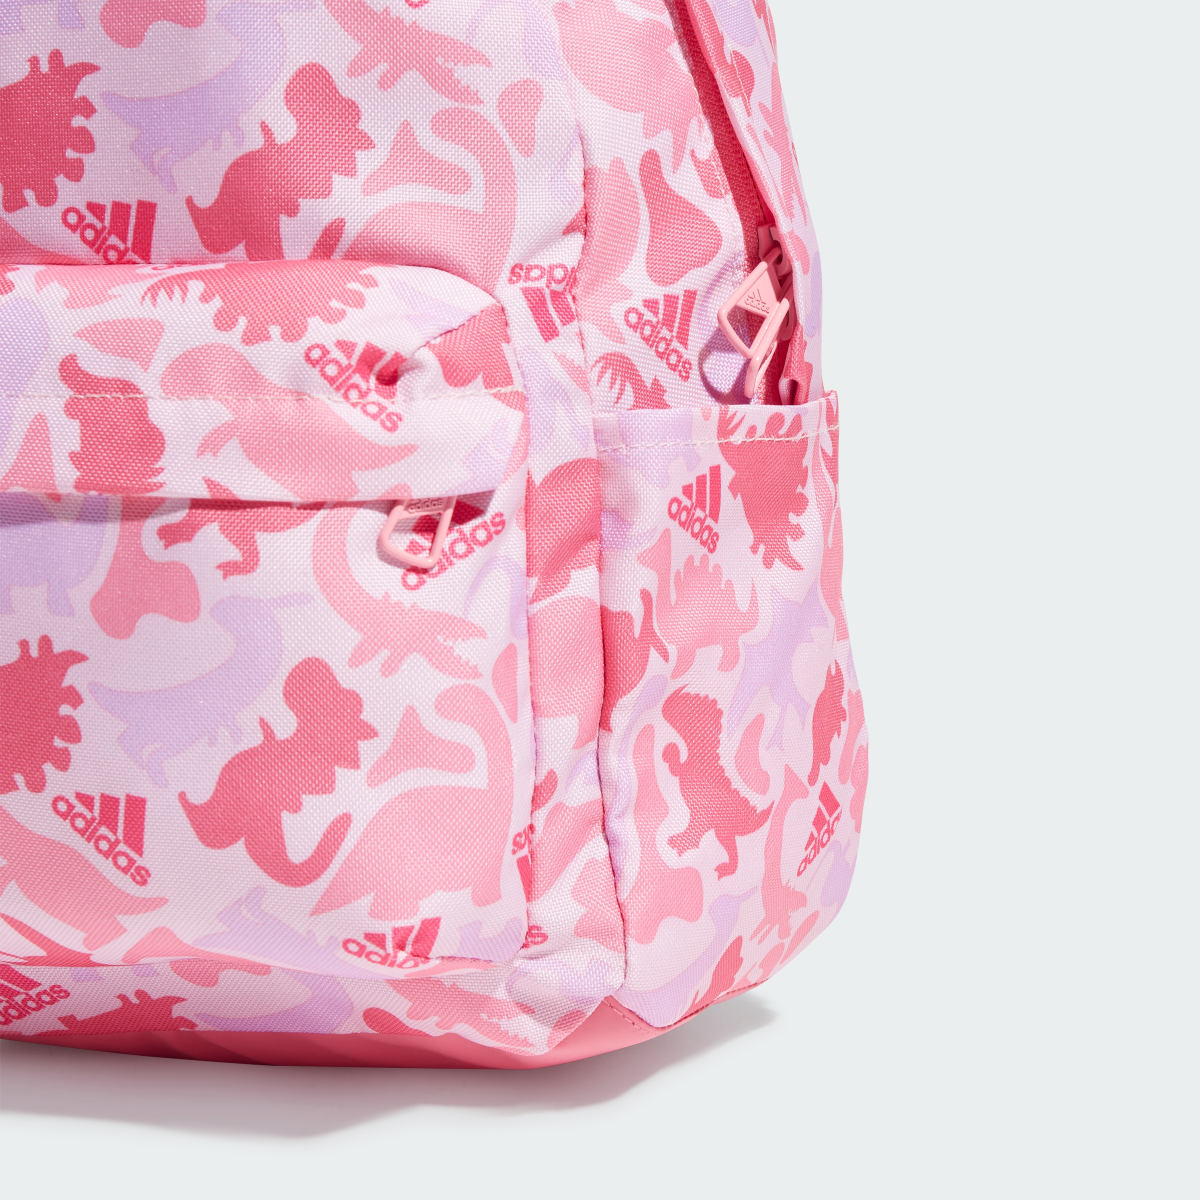 Adidas Printed Backpack Kids. 5